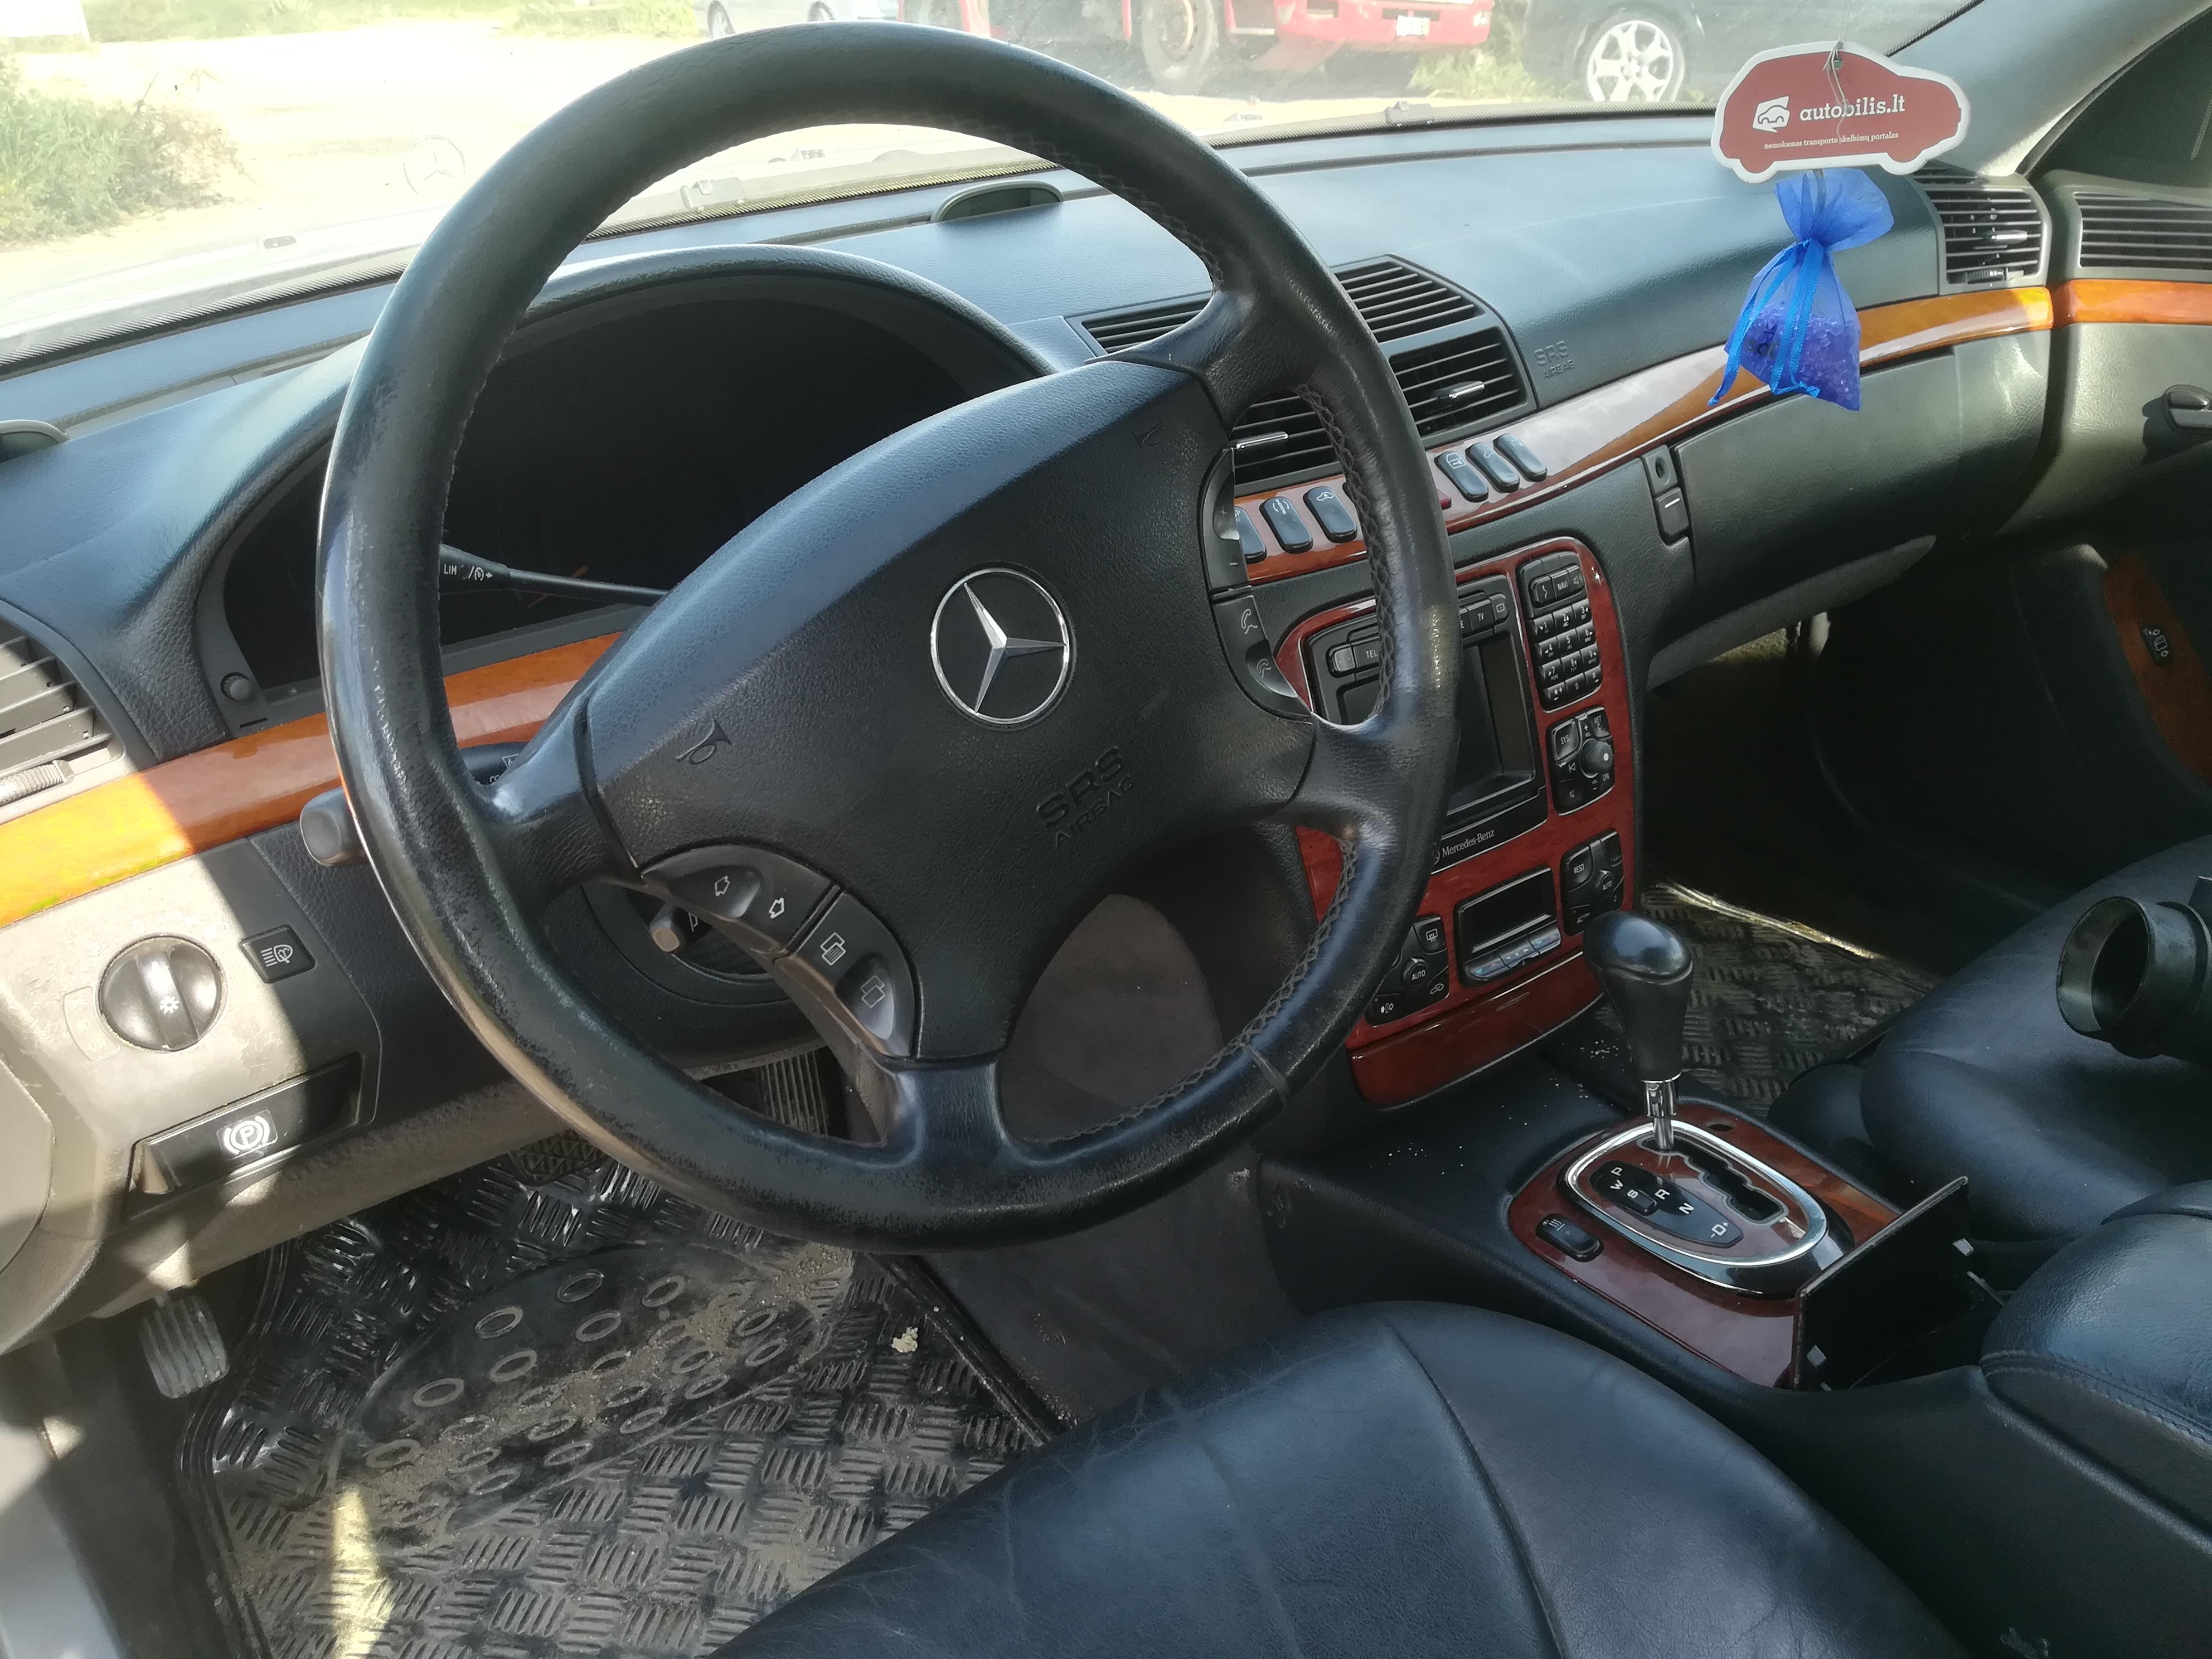 Подержанные Автозапчасти Mercedes-Benz S-CLASS 2001 3.2 автоматическая седан 4/5 d. Серый 2019-9-12